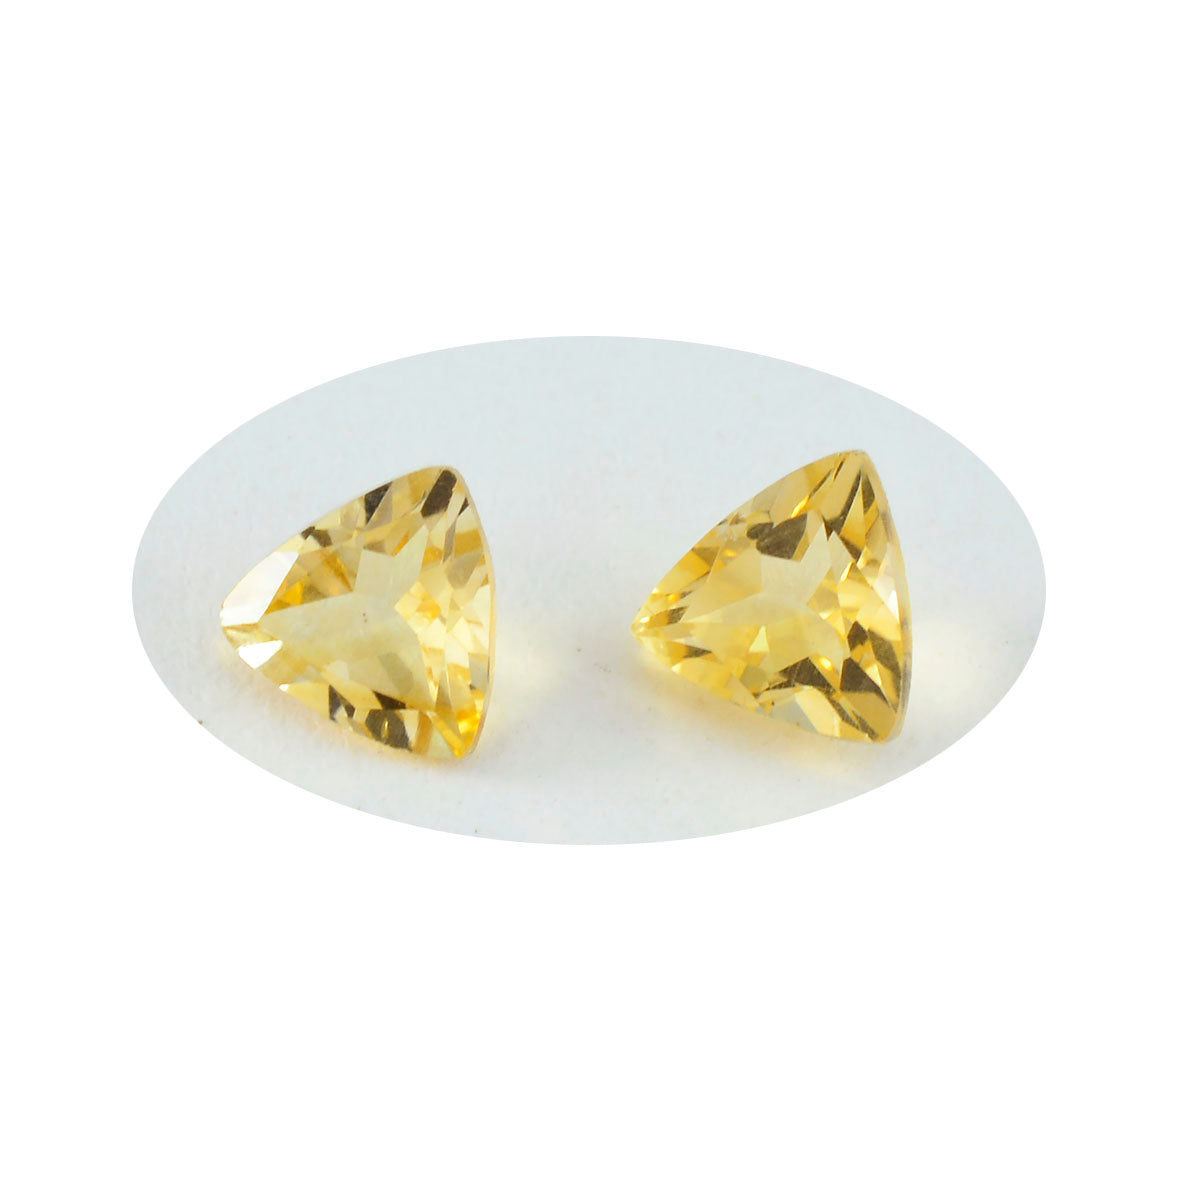 Riyogems, 1 unidad, citrino amarillo auténtico facetado, 11x11mm, forma de trillón, gema de calidad maravillosa